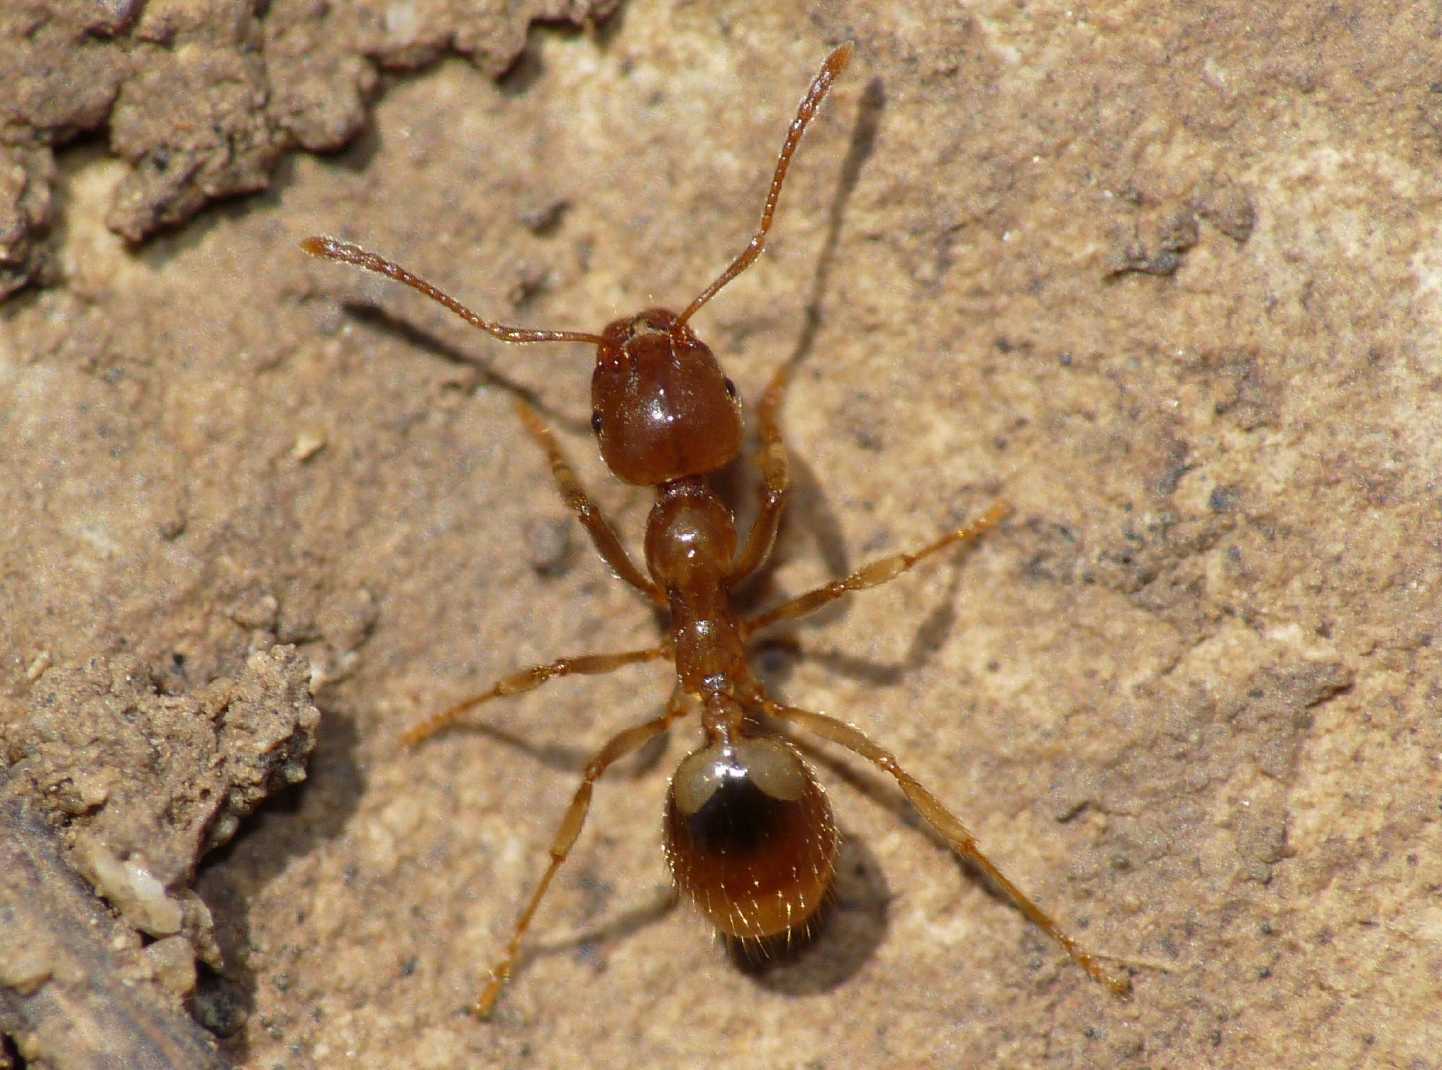 Aphaenogaster subterranea